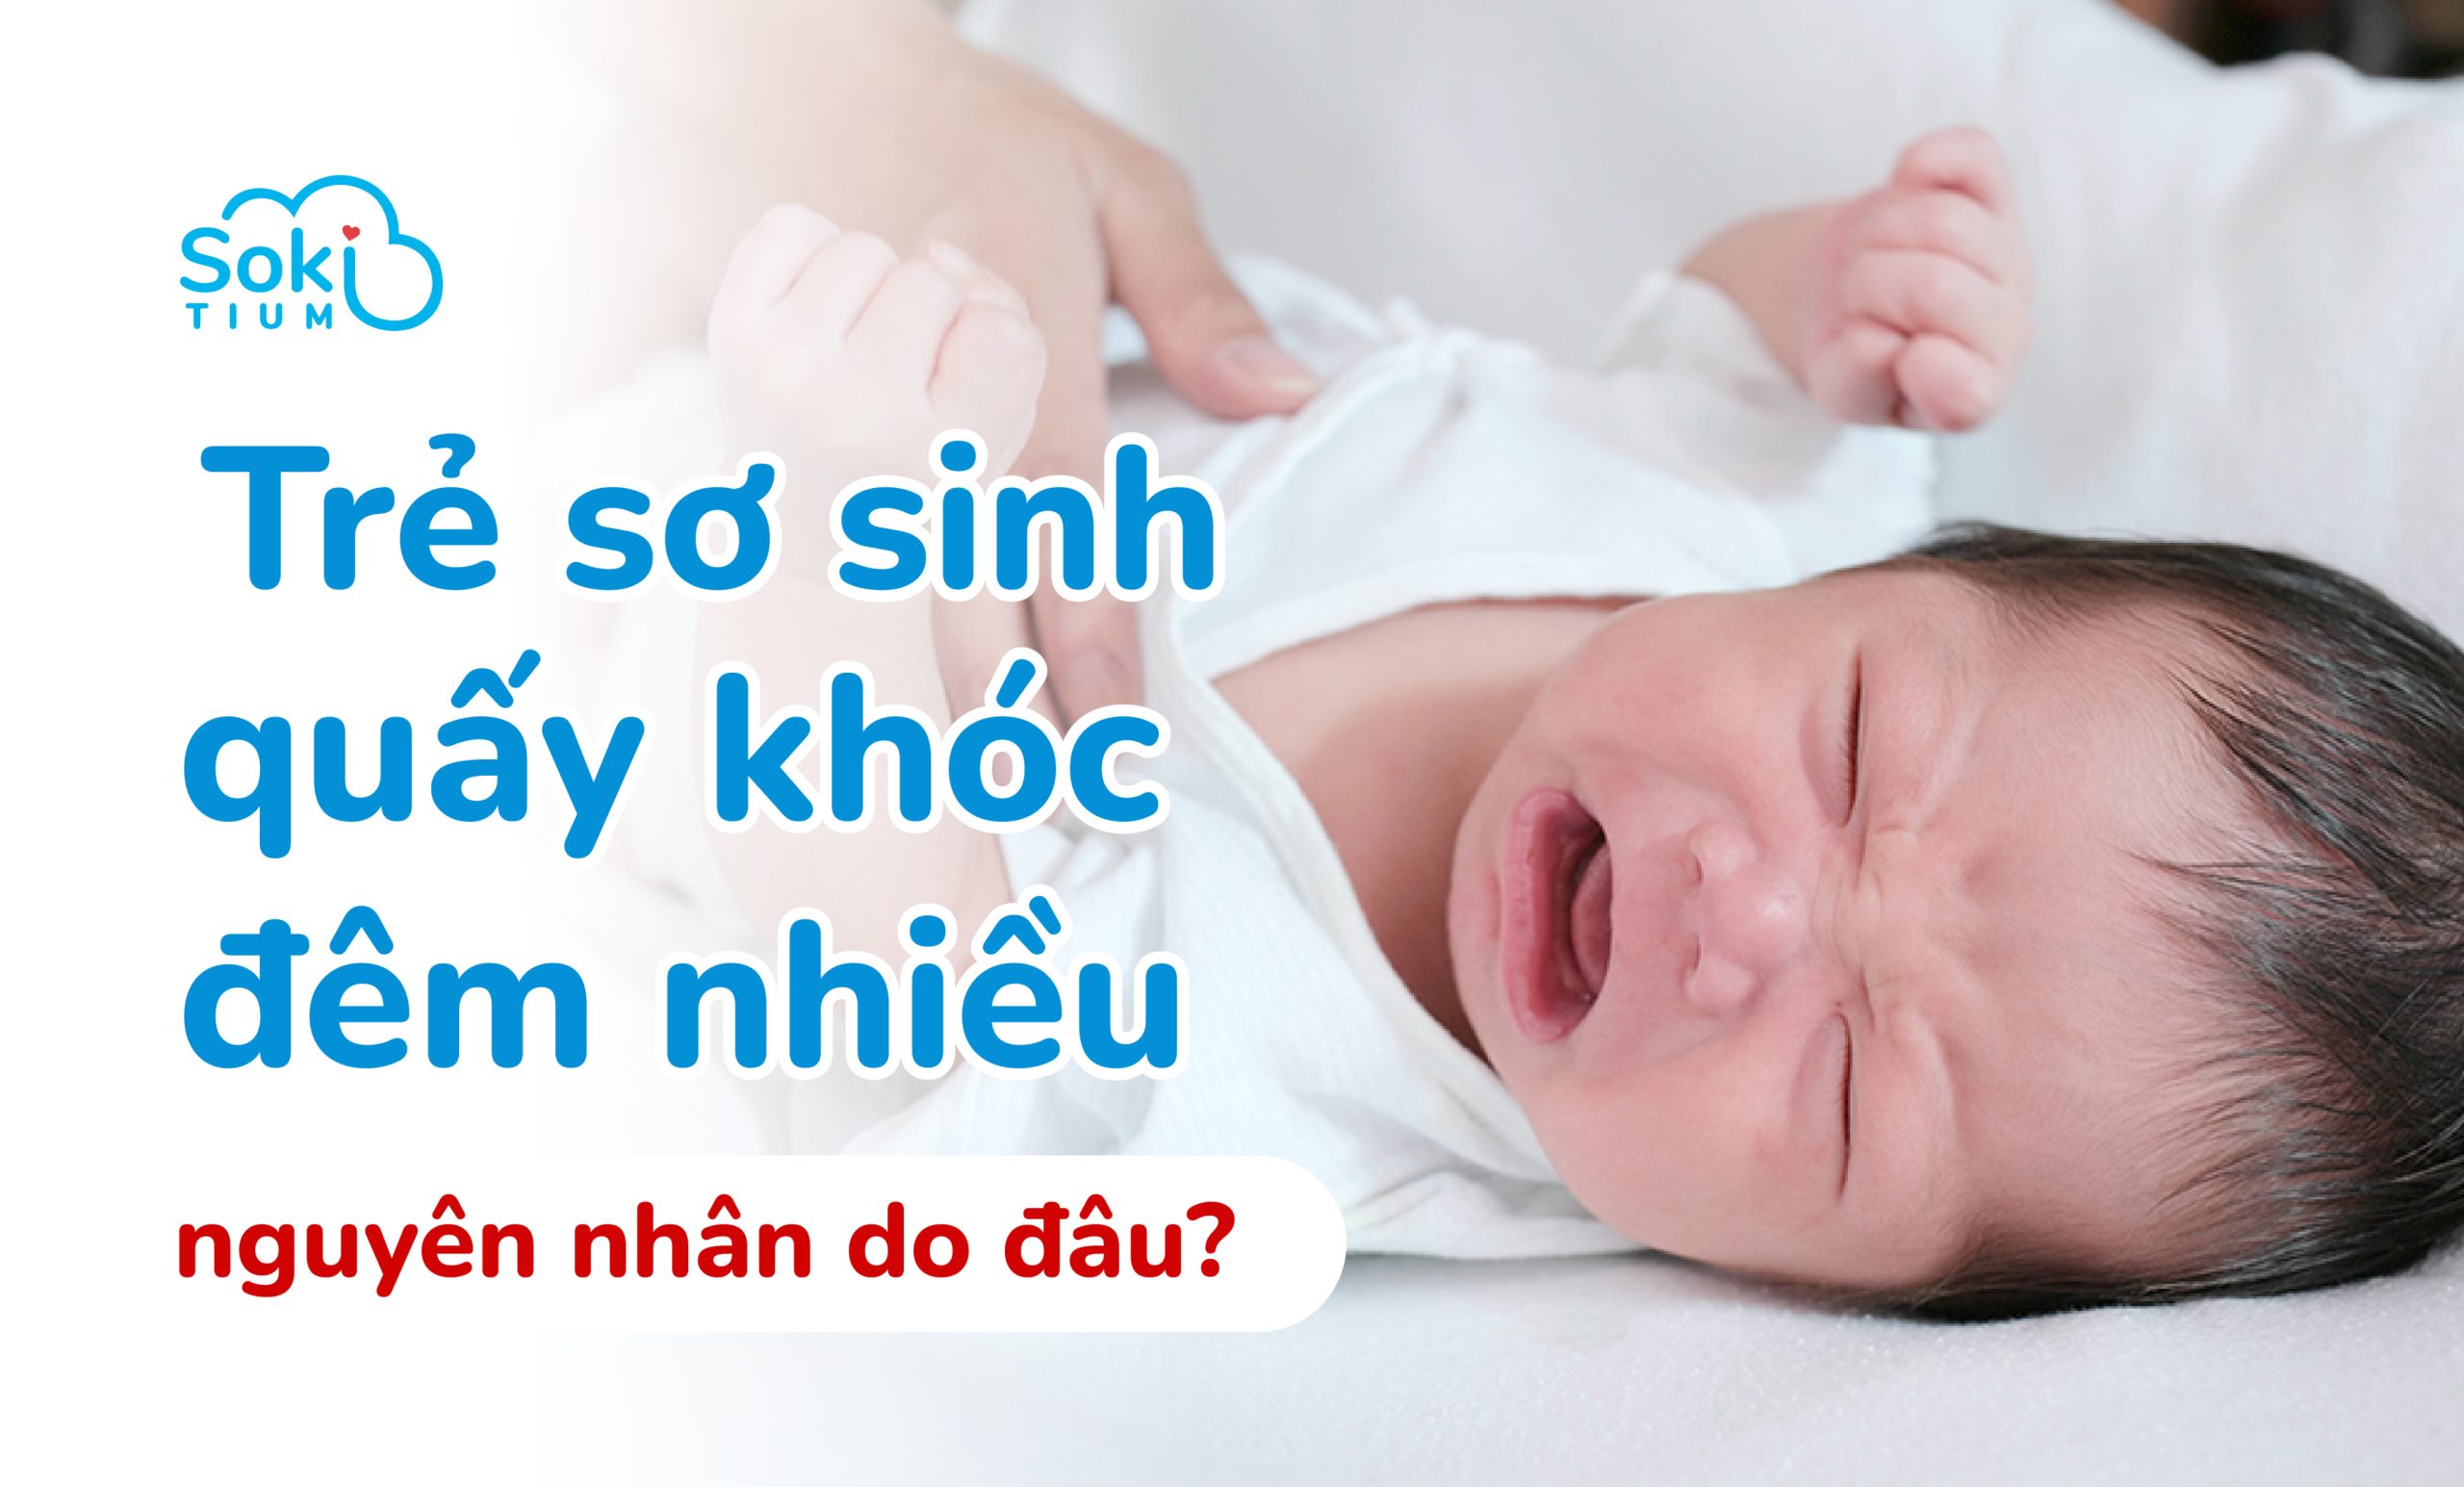 Trẻ sơ sinh quấy khóc đêm nhiều - Nguyên nhân do đâu? 